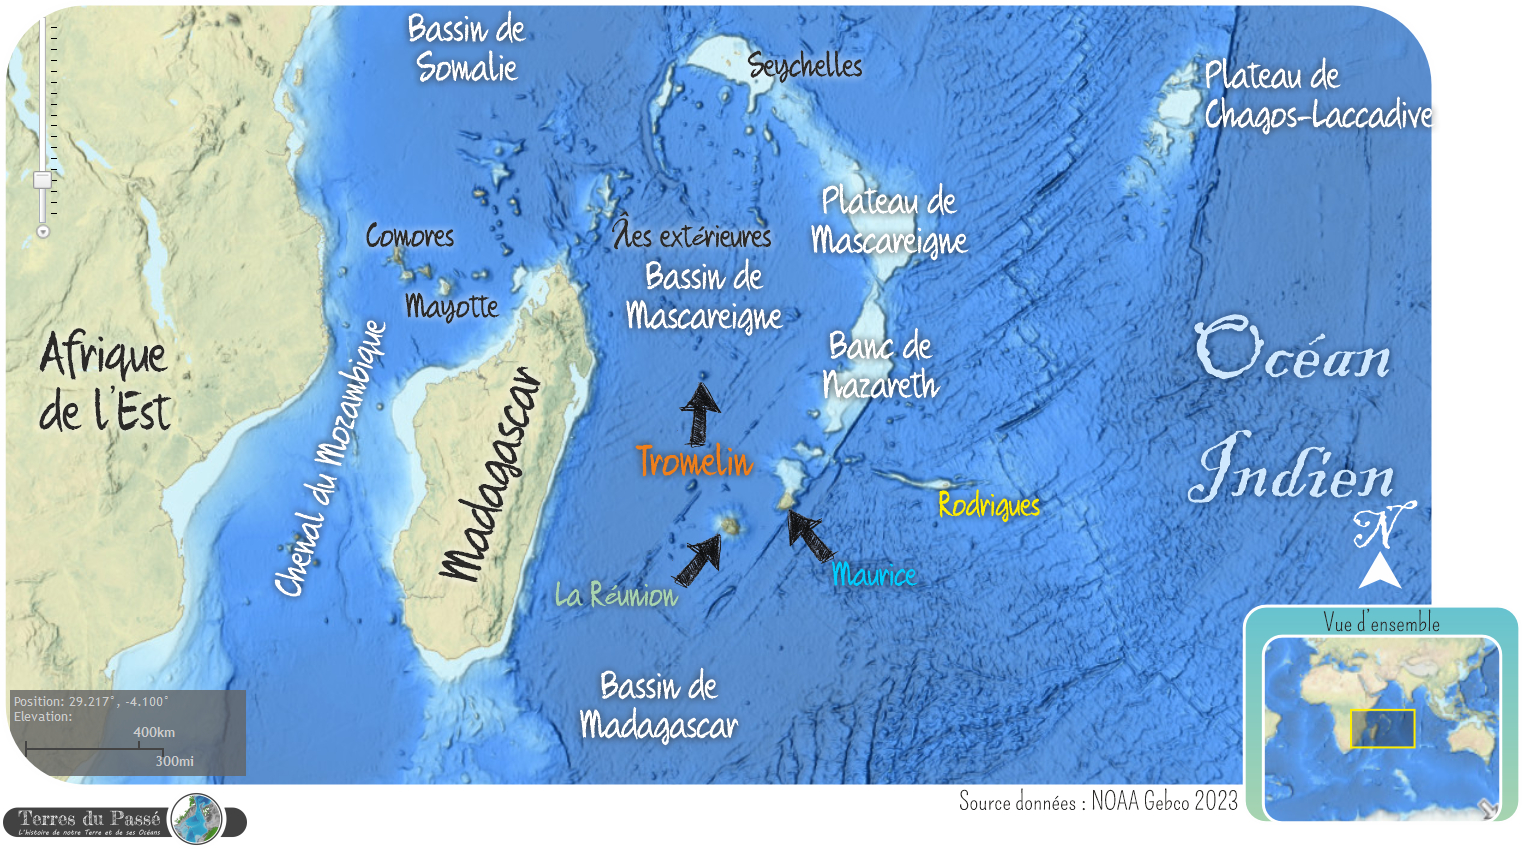 Carte du bassin des Mascareignes et de Madagascar, où se trouve l'île Tromelin, mais aussi les îles de la Réunion, Maurice et Rodrigues. 